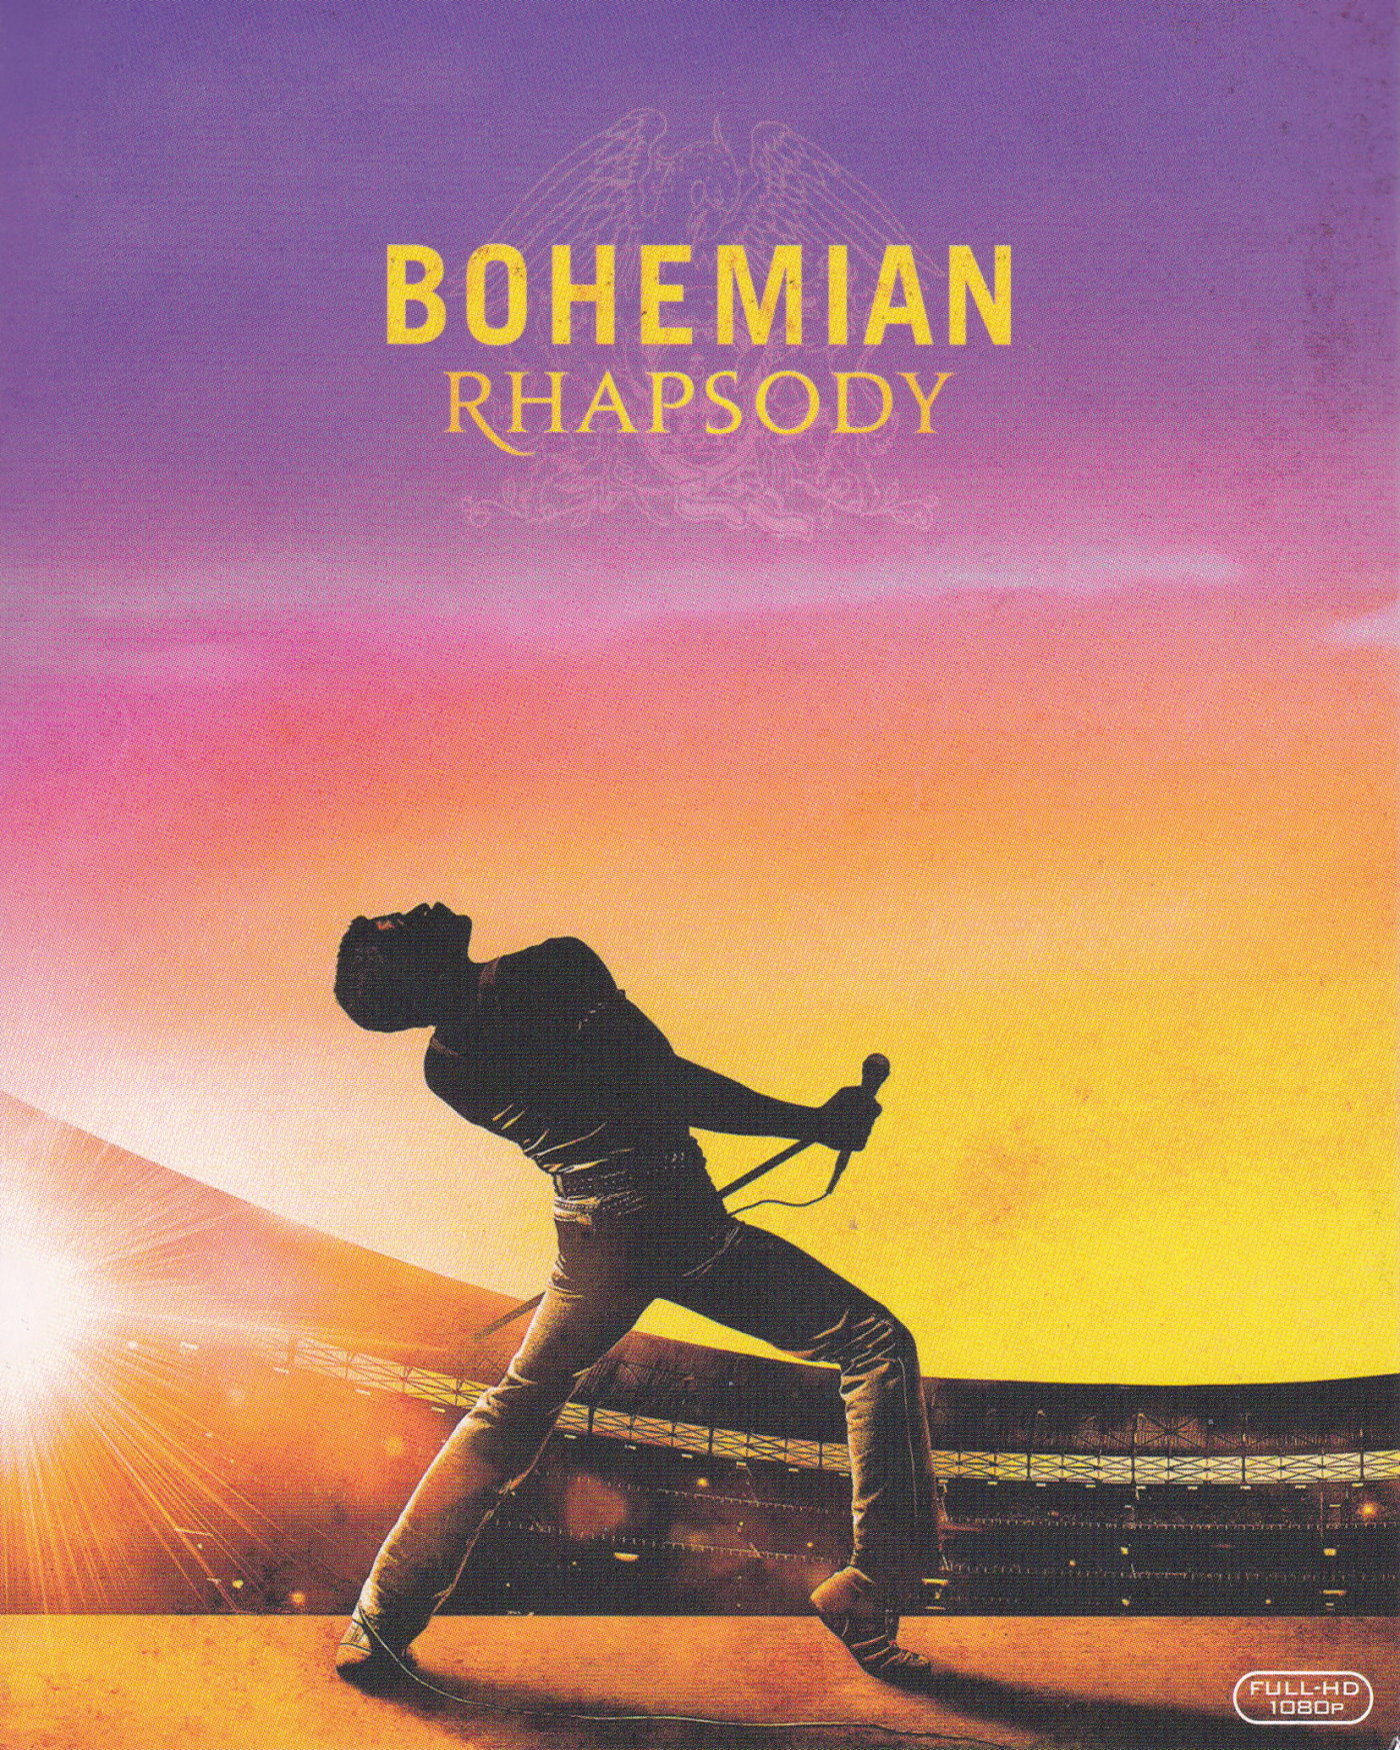 Cover - Bohemian Rhapsody.jpg